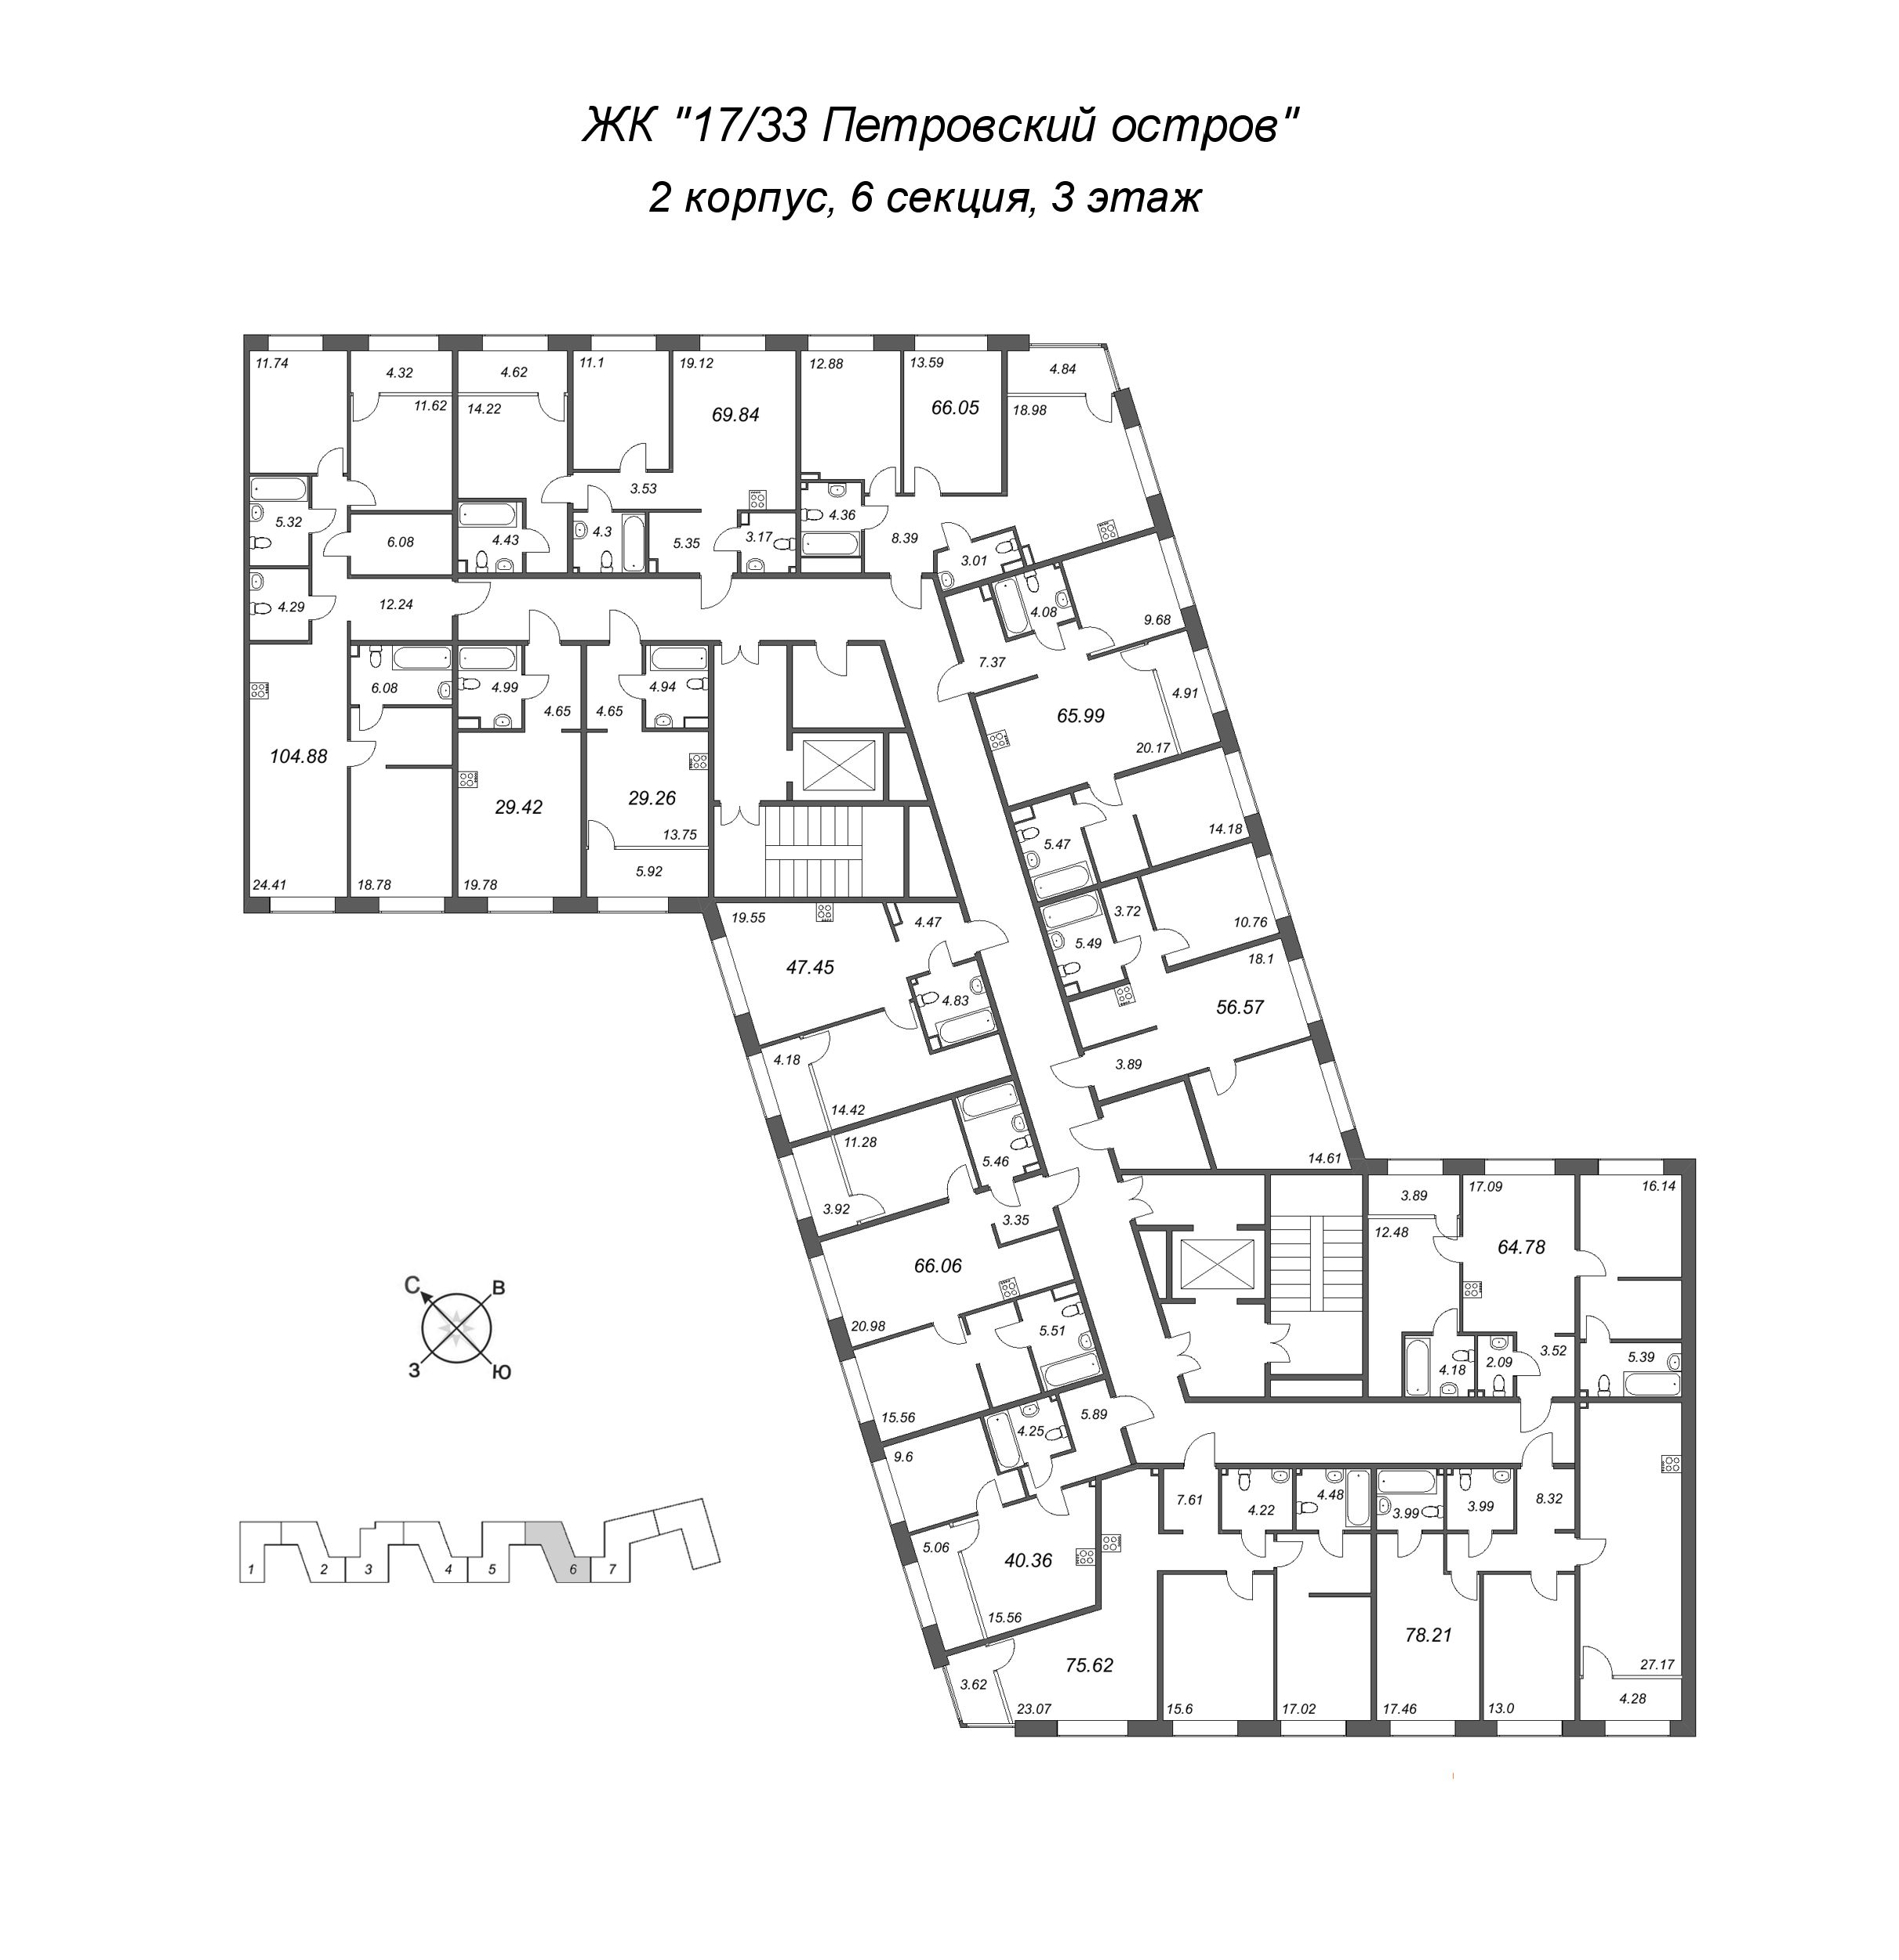 3-комнатная (Евро) квартира, 64.78 м² в ЖК "17/33 Петровский остров" - планировка этажа